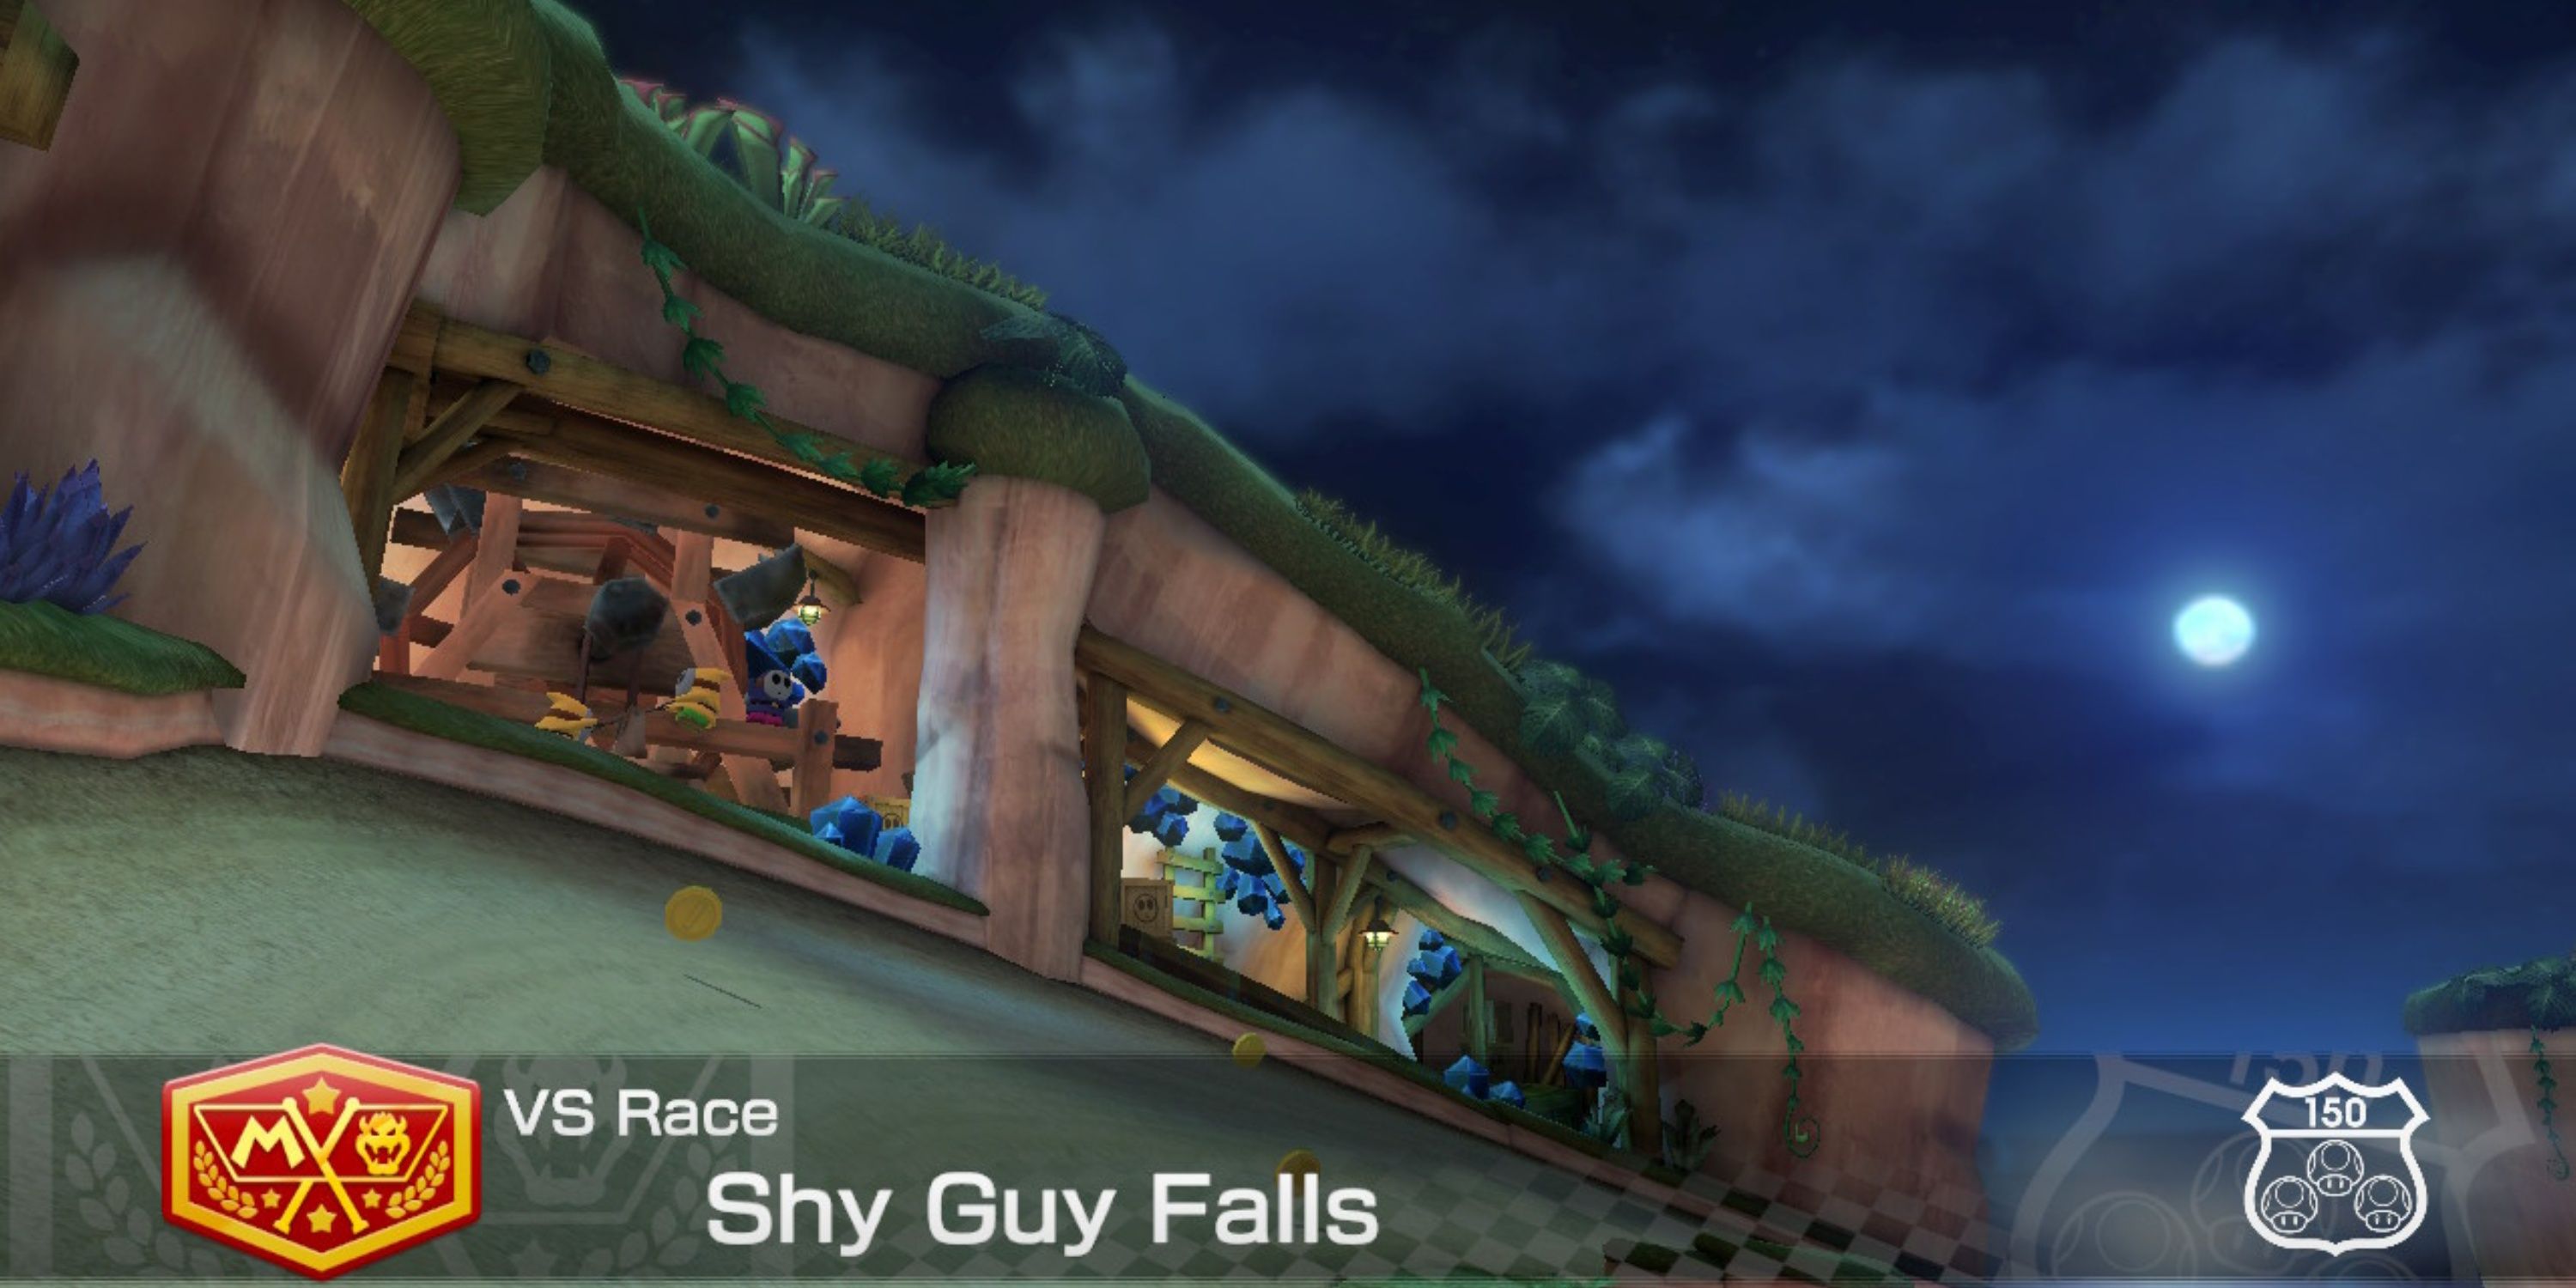 shy guy falls at night